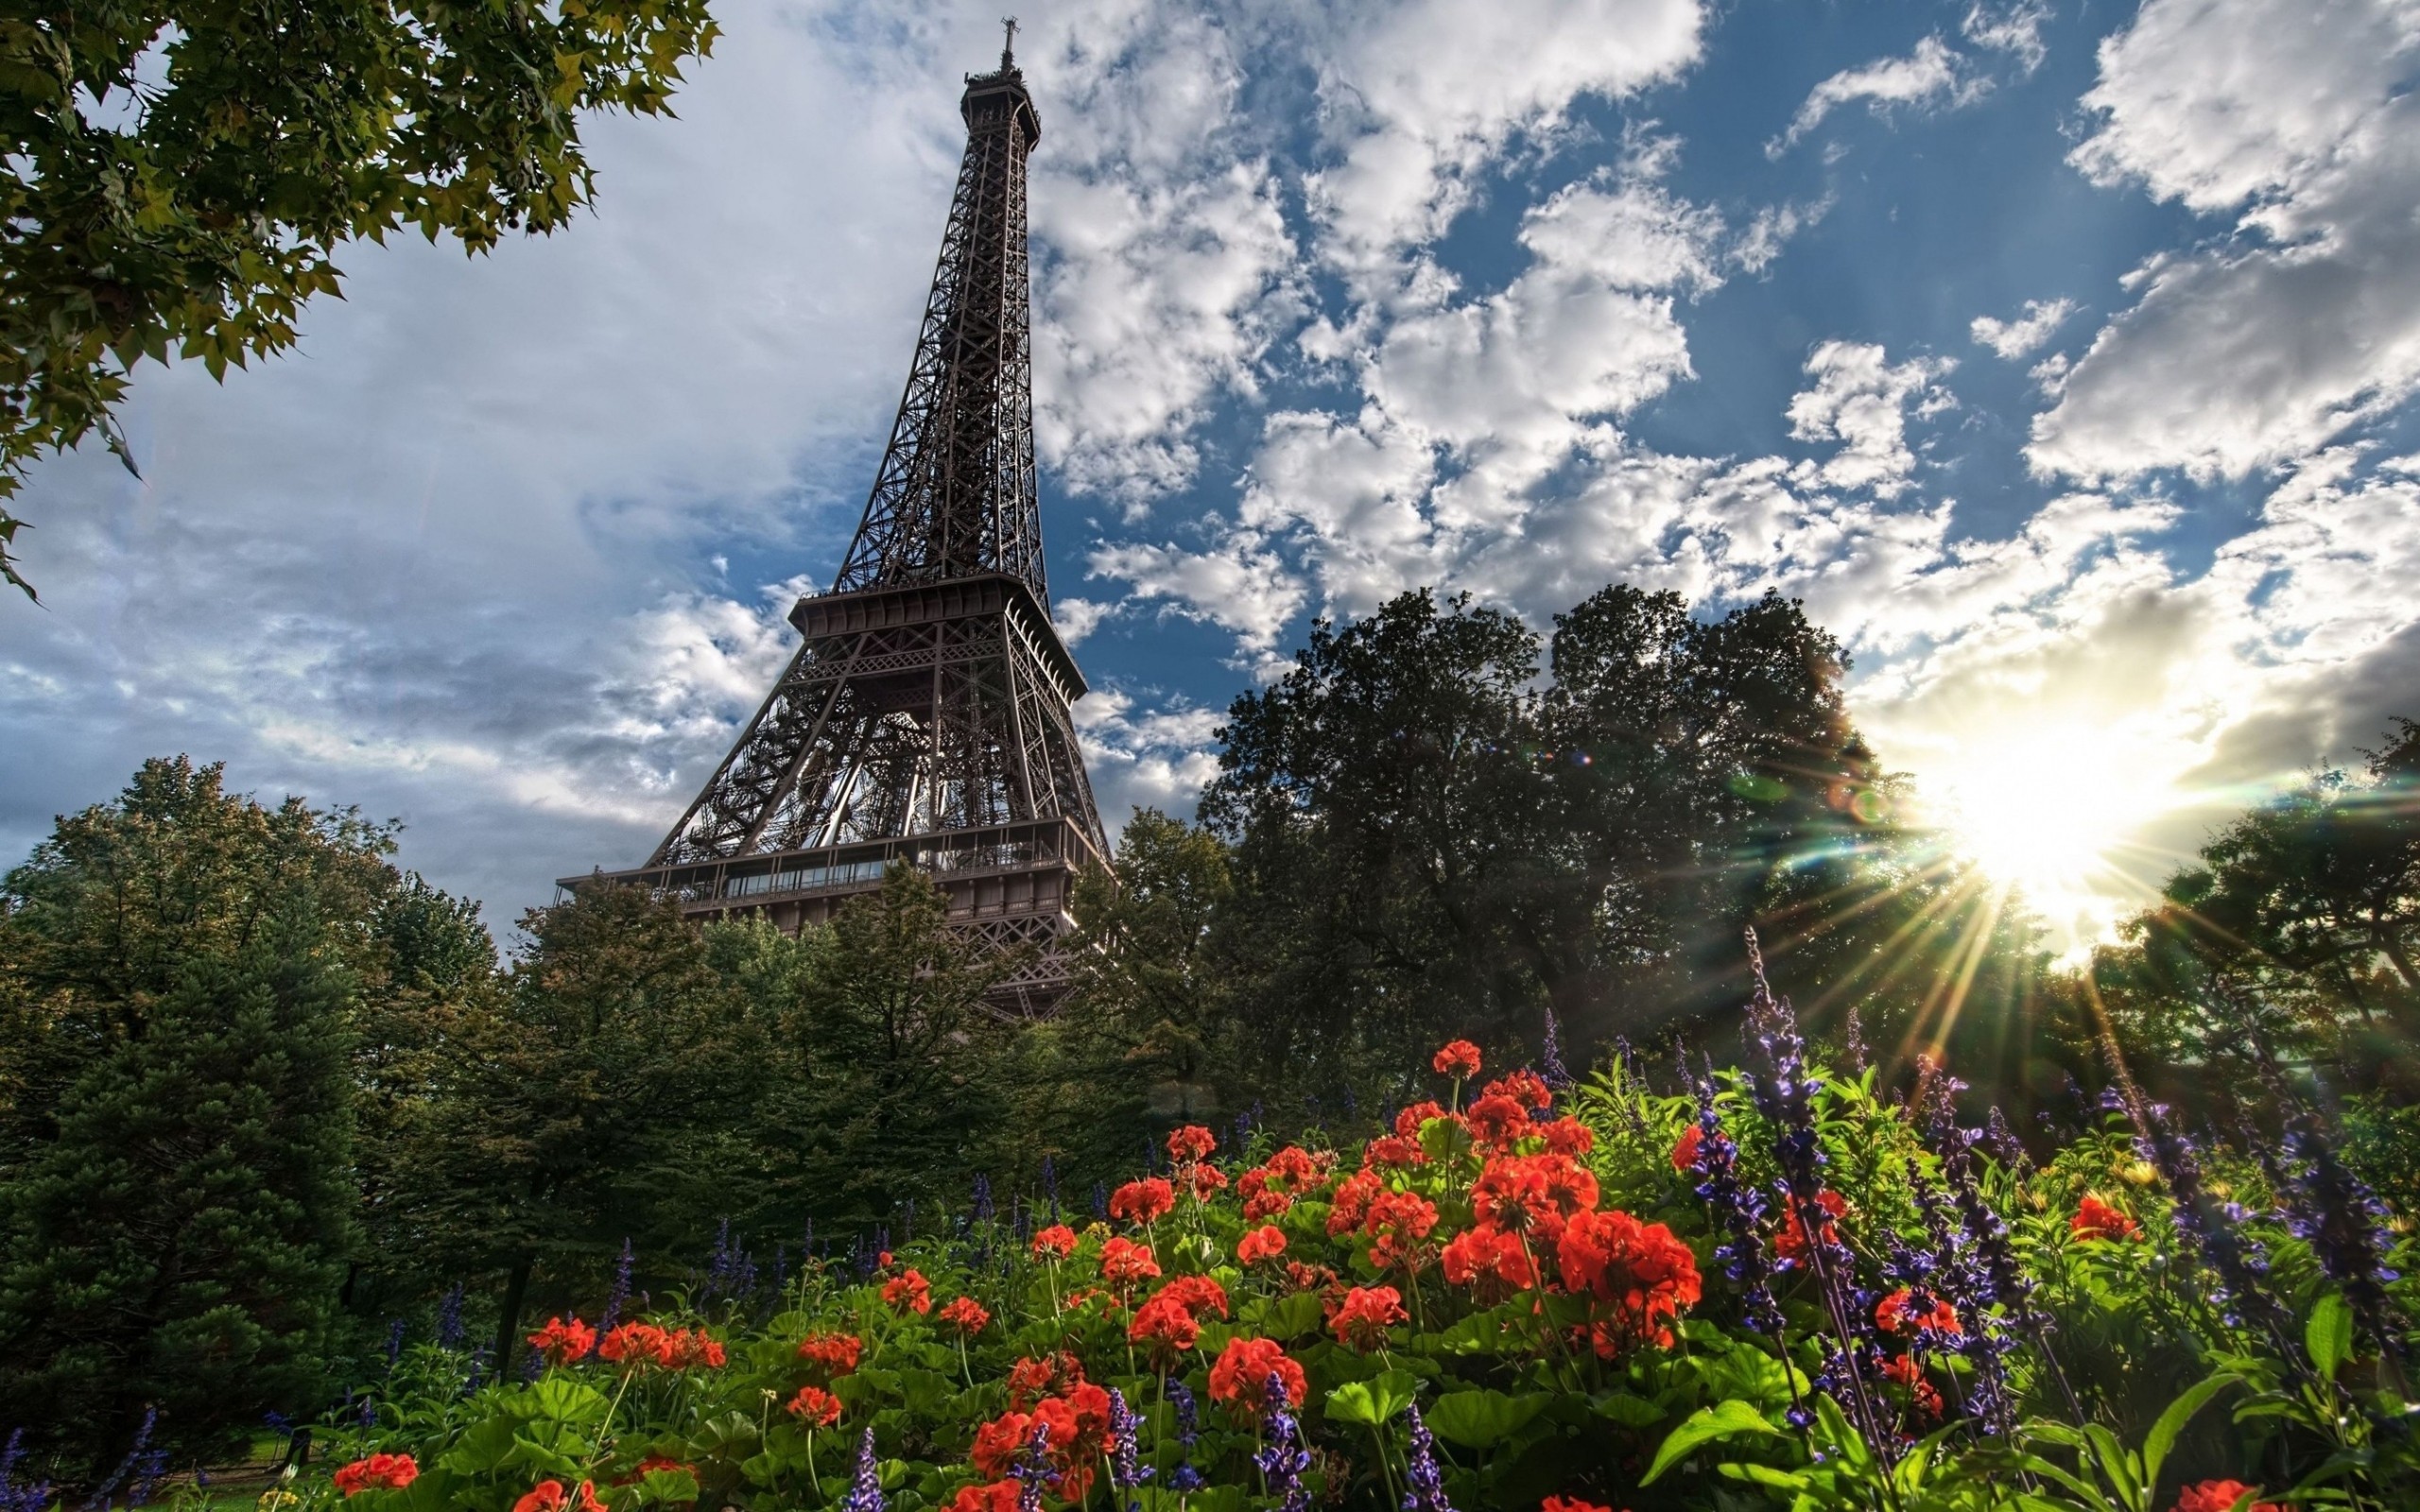 General 2560x1600 cityscape Paris Eiffel Tower France flowers clouds Sun plants landmark